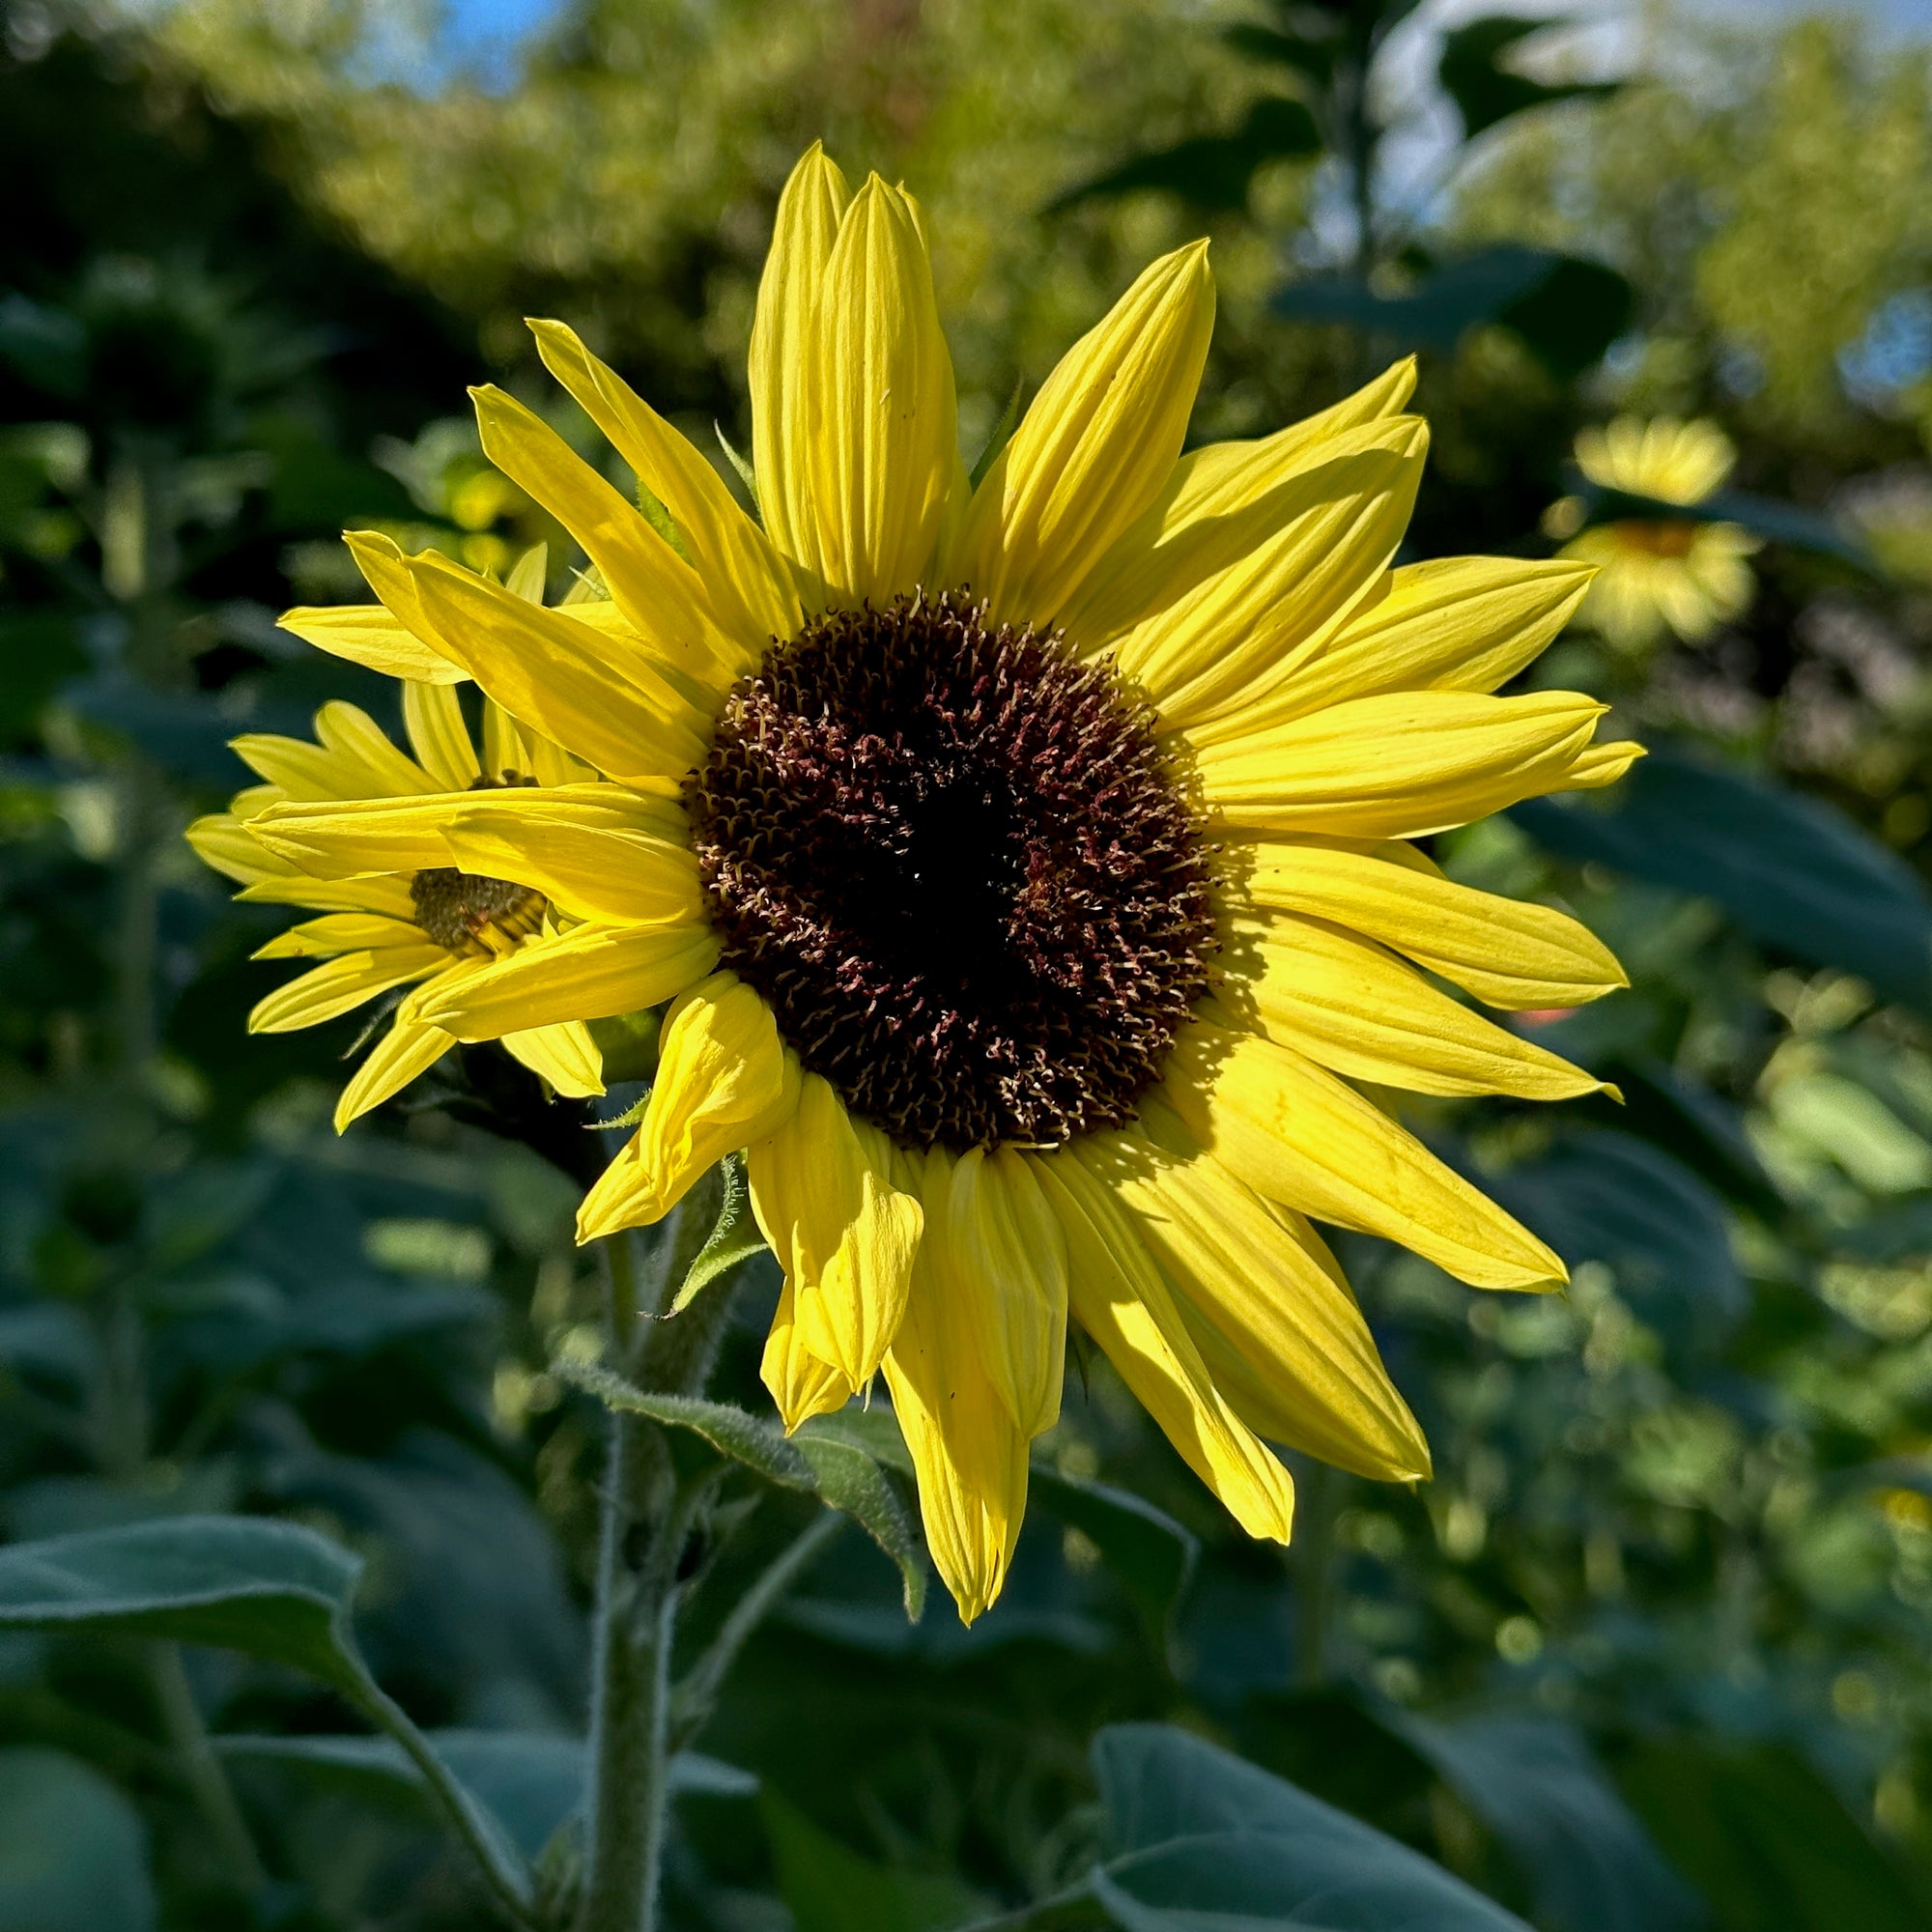 Lemon Queen Sunflower Closeup